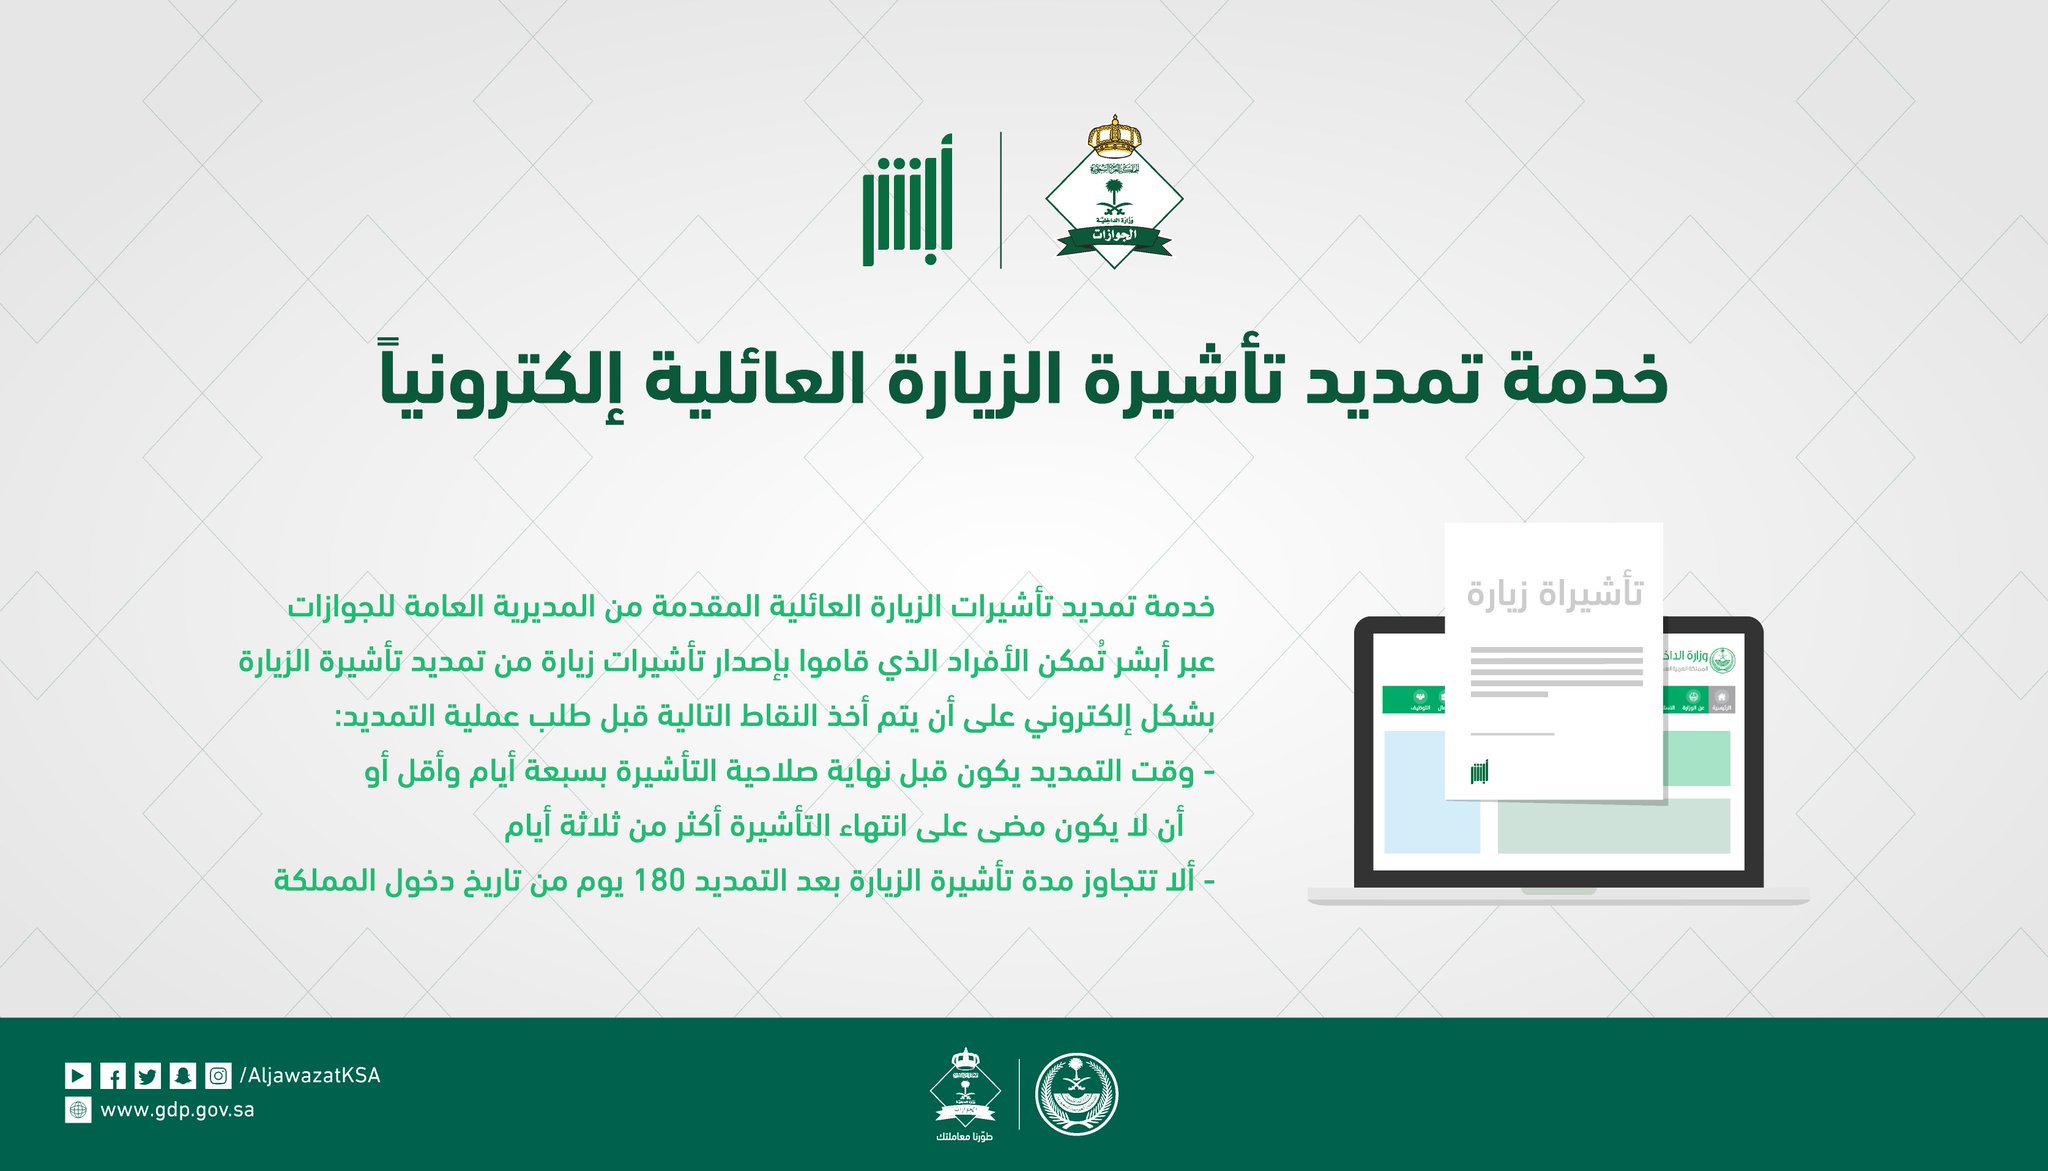 الجوازات السعودية على تويتر بإمكانك تمديد تأشيرة الزيارة العائلية عبر منصة أبشر حتى 180 يوم من تاريخ الدخول